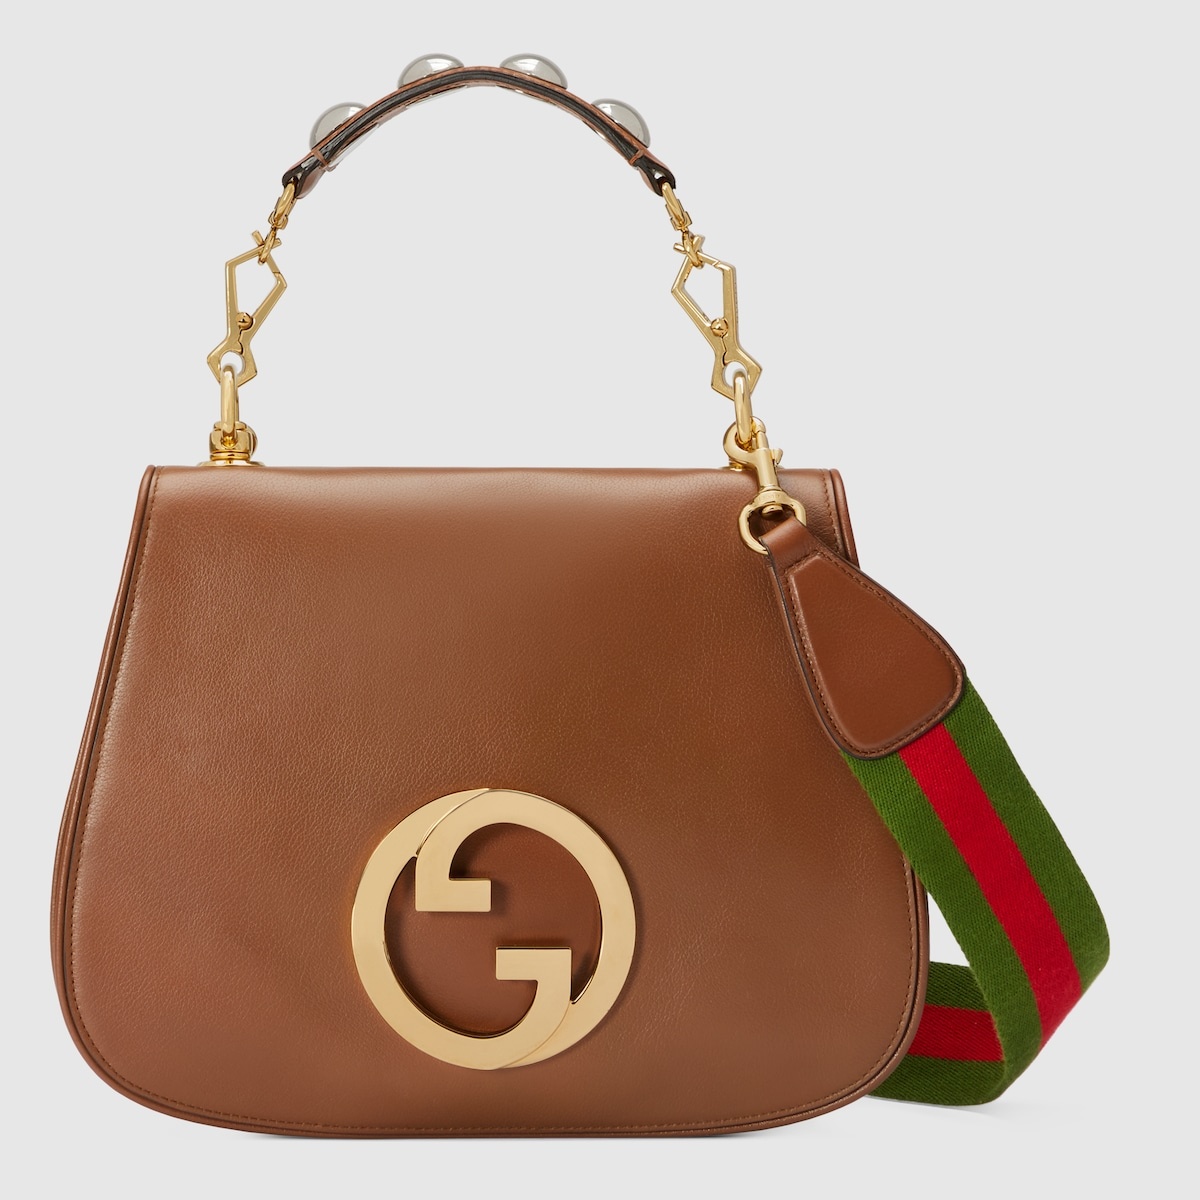 Gucci Blondie top handle bag - 1